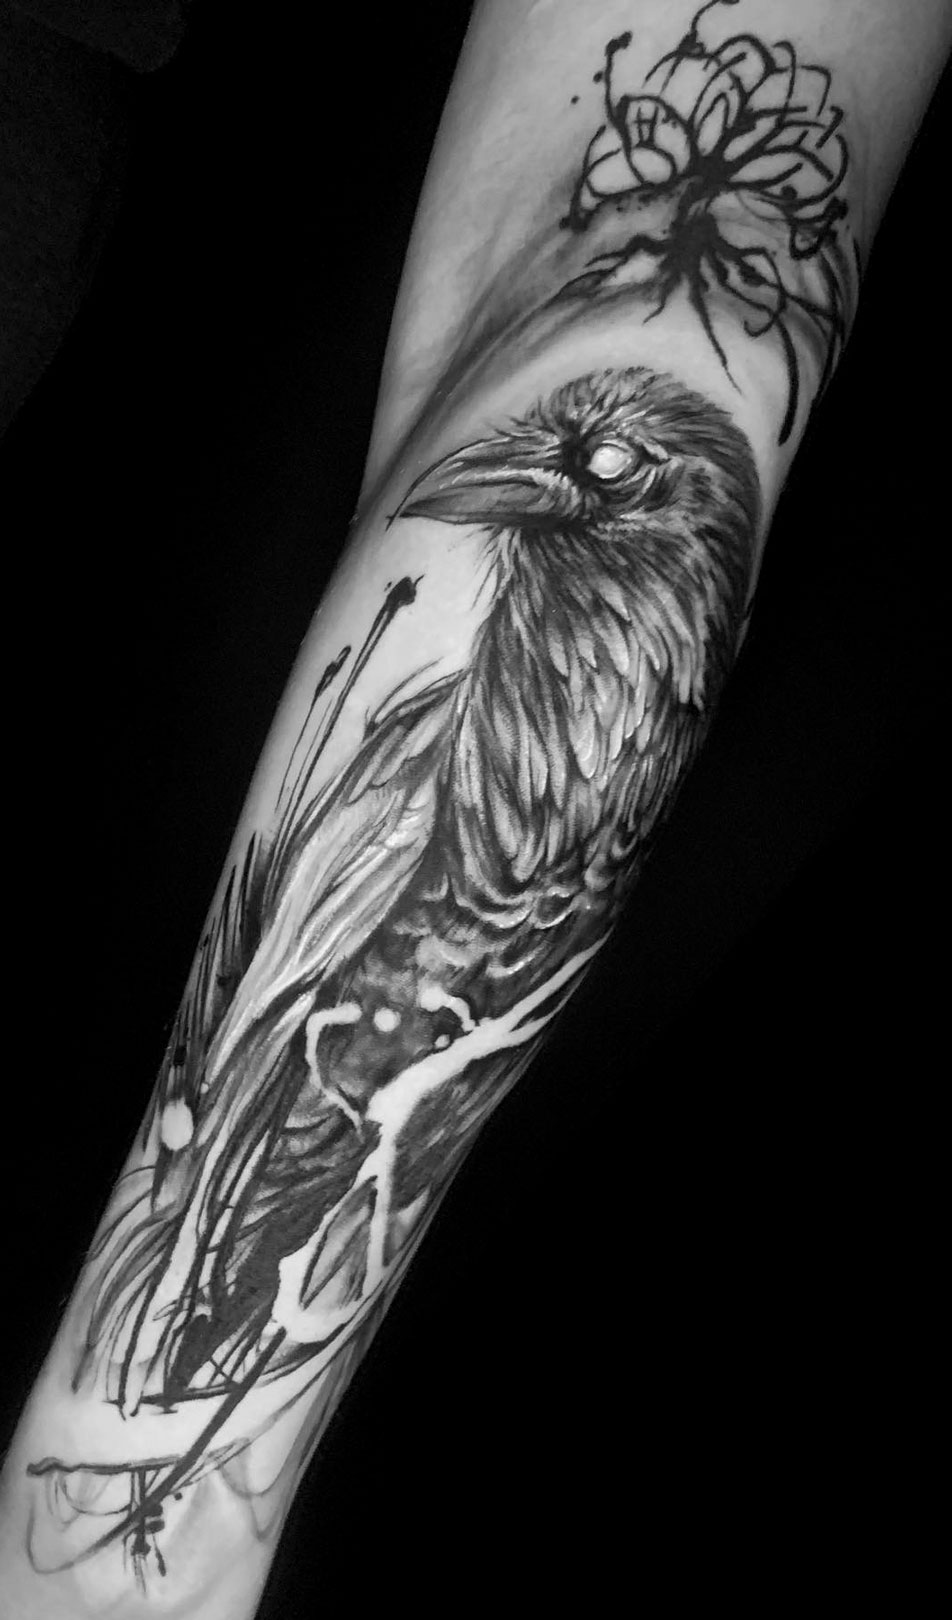 Tattoo Anansi Studio München Munich Haidhausen Tim dark horror raven crow yggdrasil best abstract realistic blackwork animal